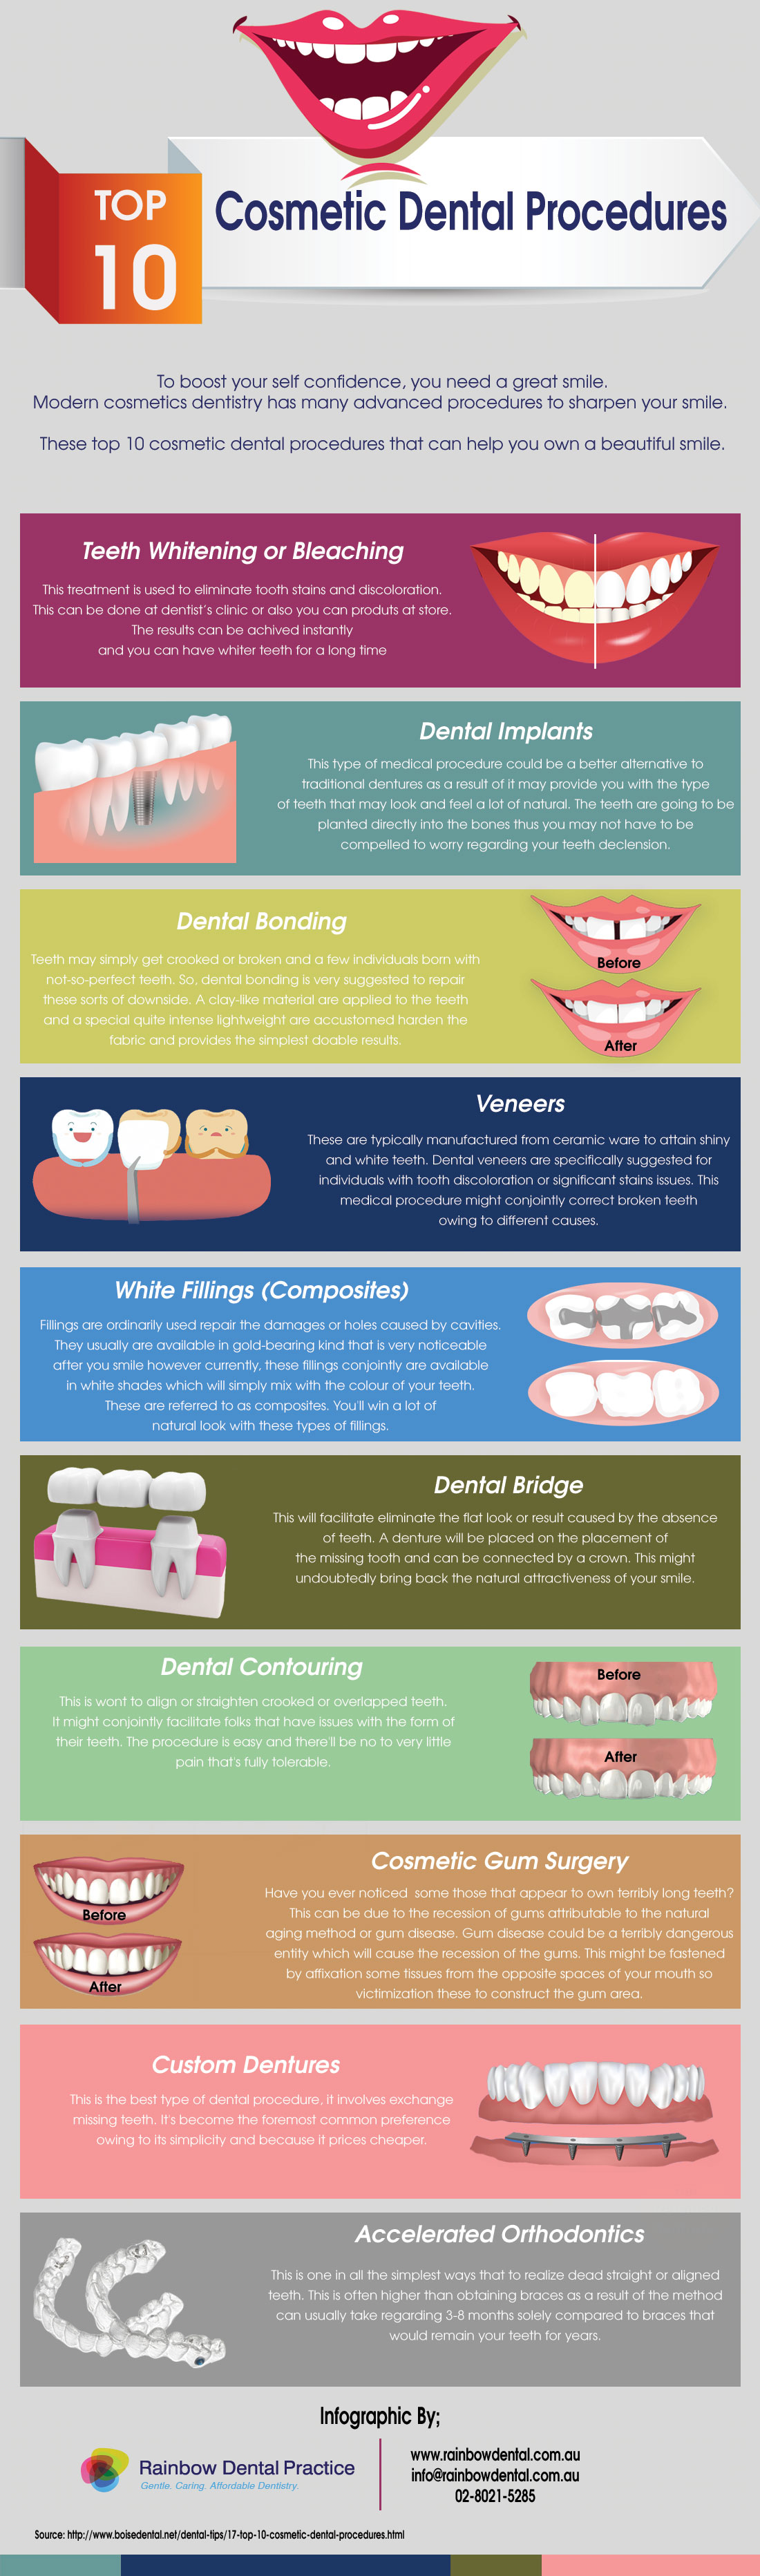 Top 10 Cosmetic Dental Procedures